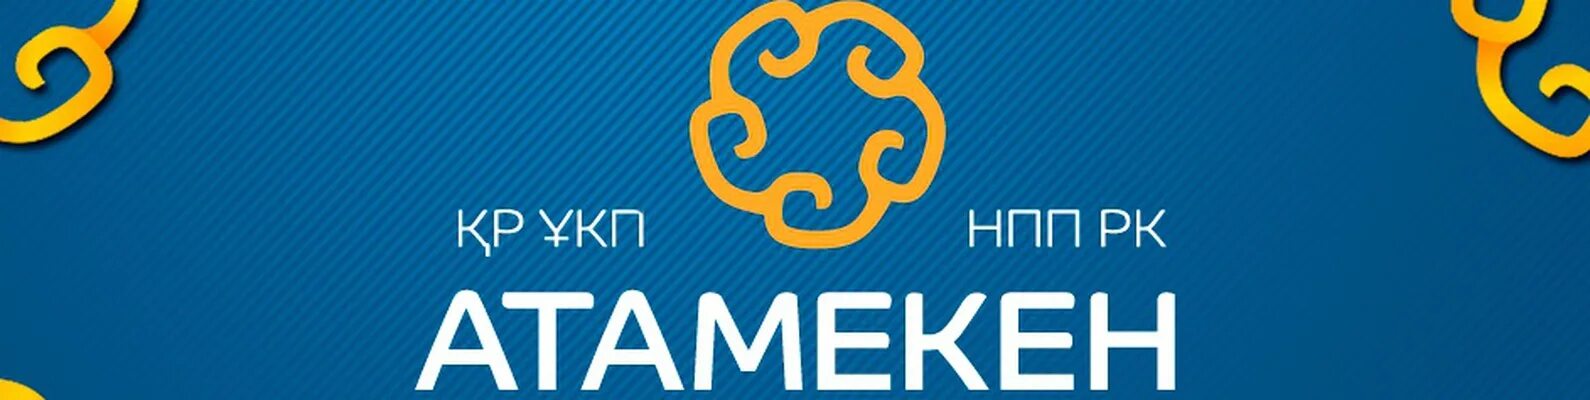 Национальной палате предпринимателей казахстана. Атамекен палата предпринимателей. Атамекен эмблема. Национальная палата предпринимателей «Атамекен» logo. НПП Атамекен логотип.